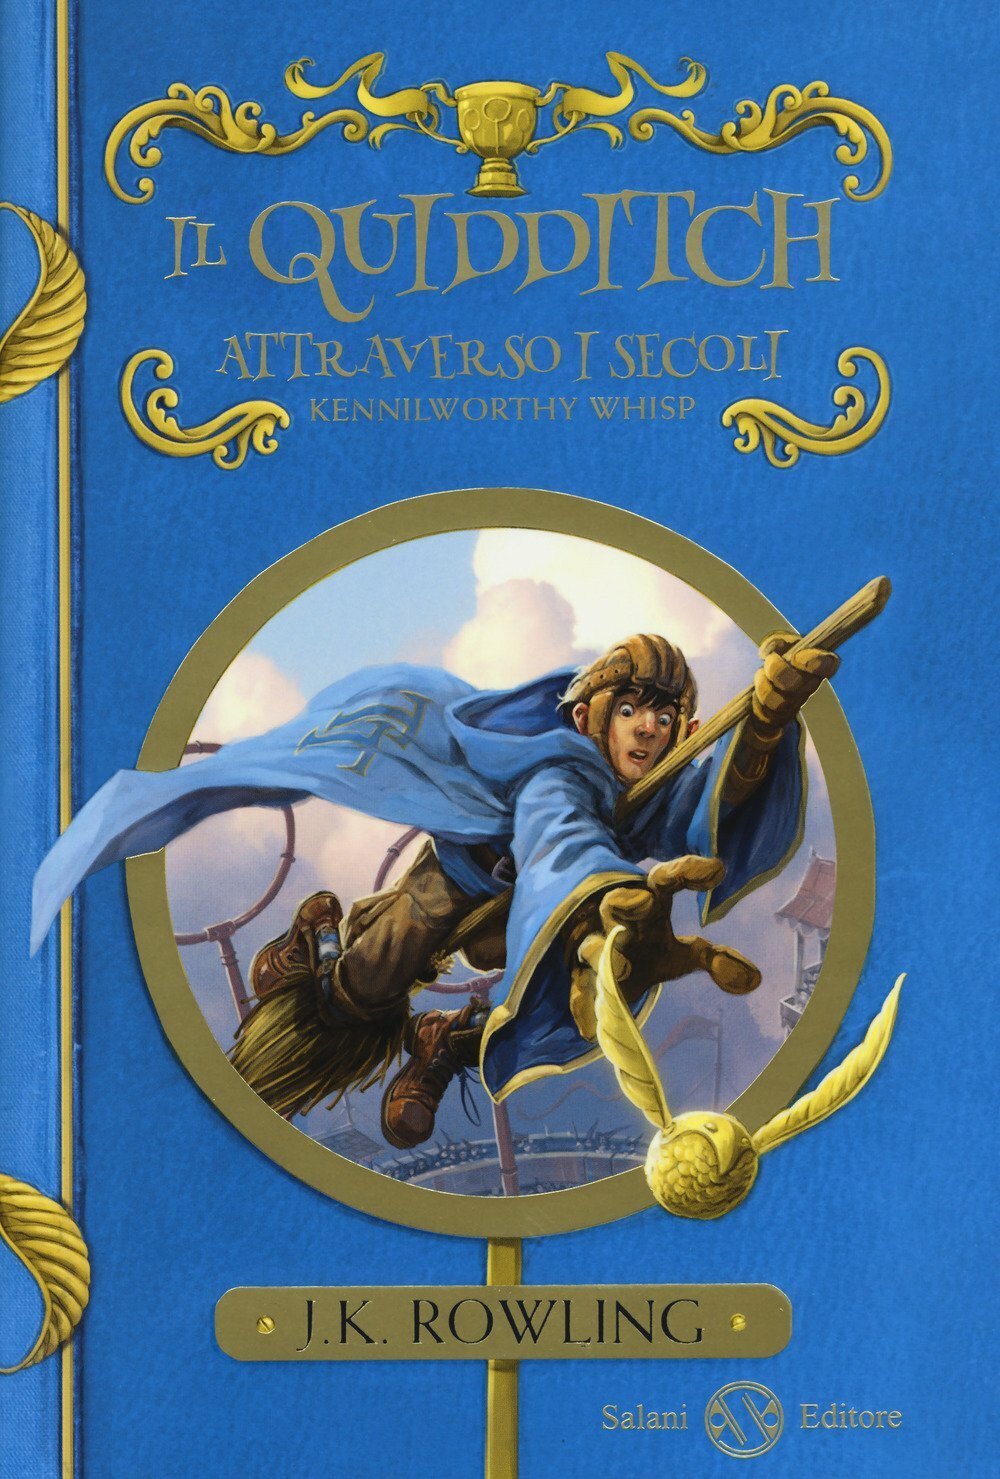 Il Quidditch attraverso i secoli